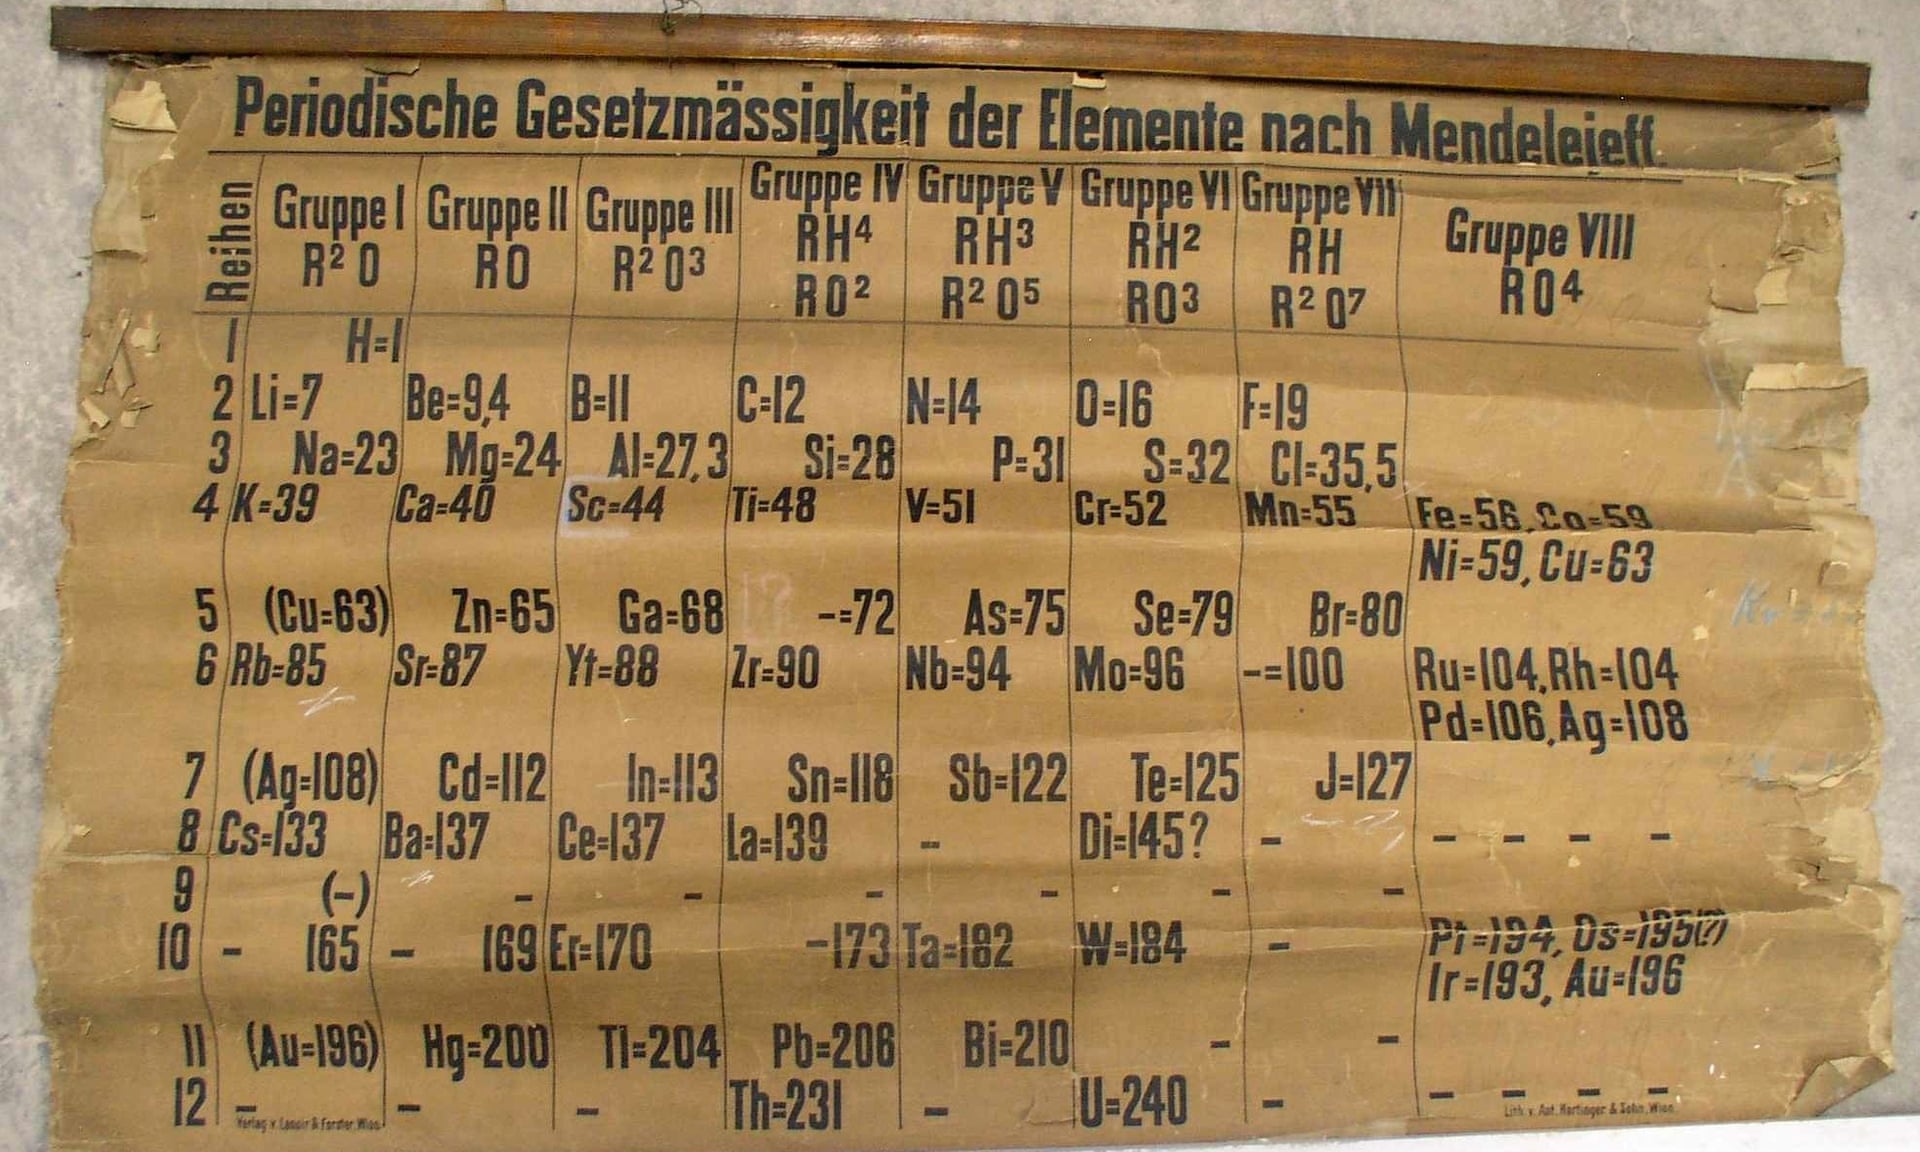 एक वैज्ञानिक को गलती से पाया गया सबसे पुराना संस्करण की आवर्त सारणी